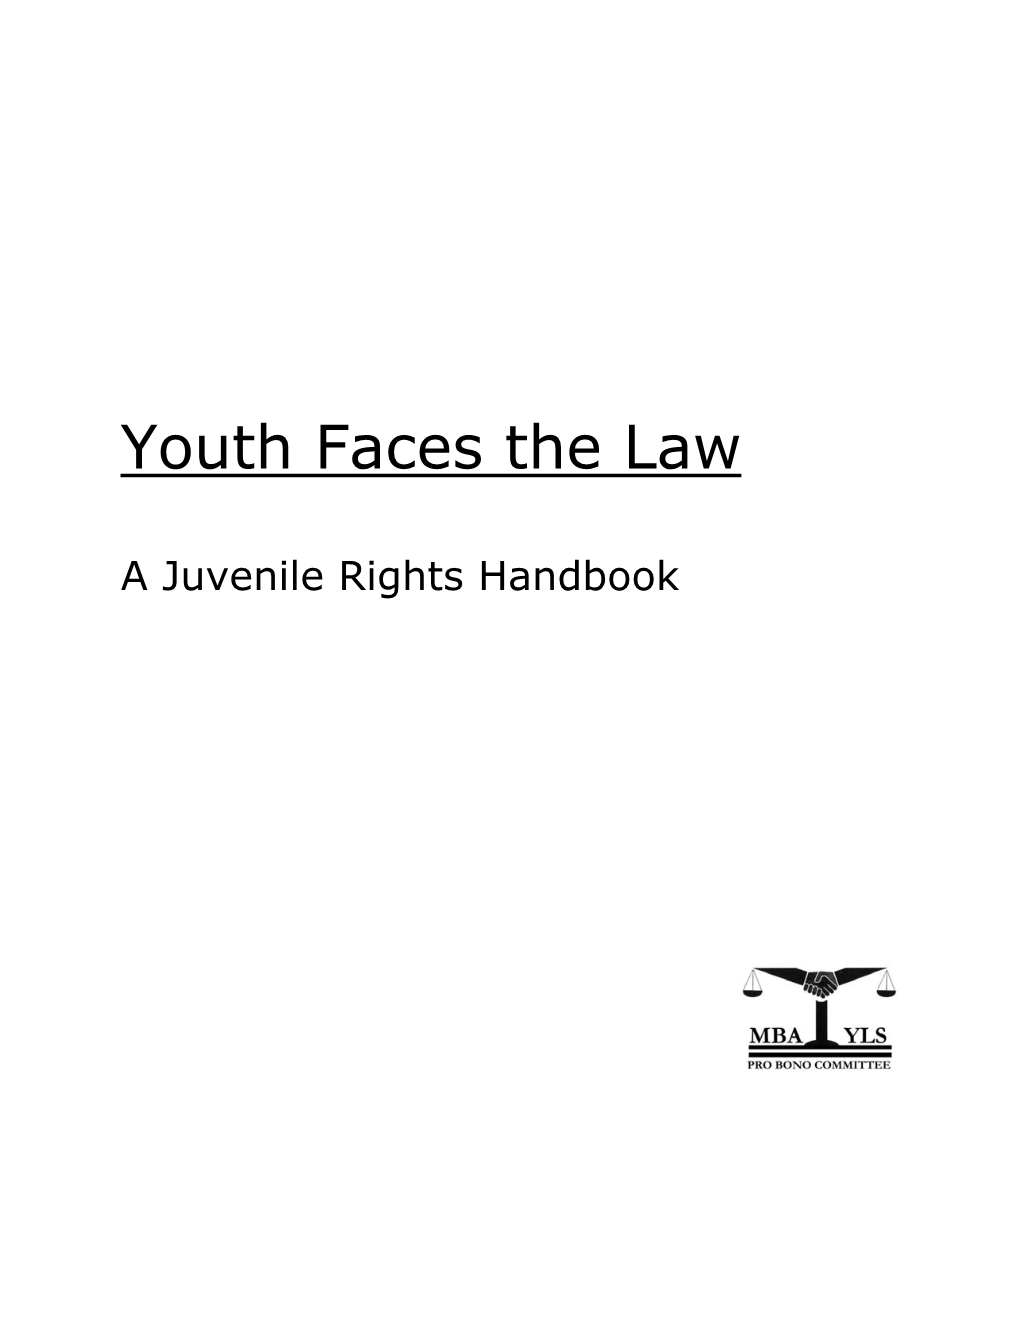 Juvenile Rights Handbook